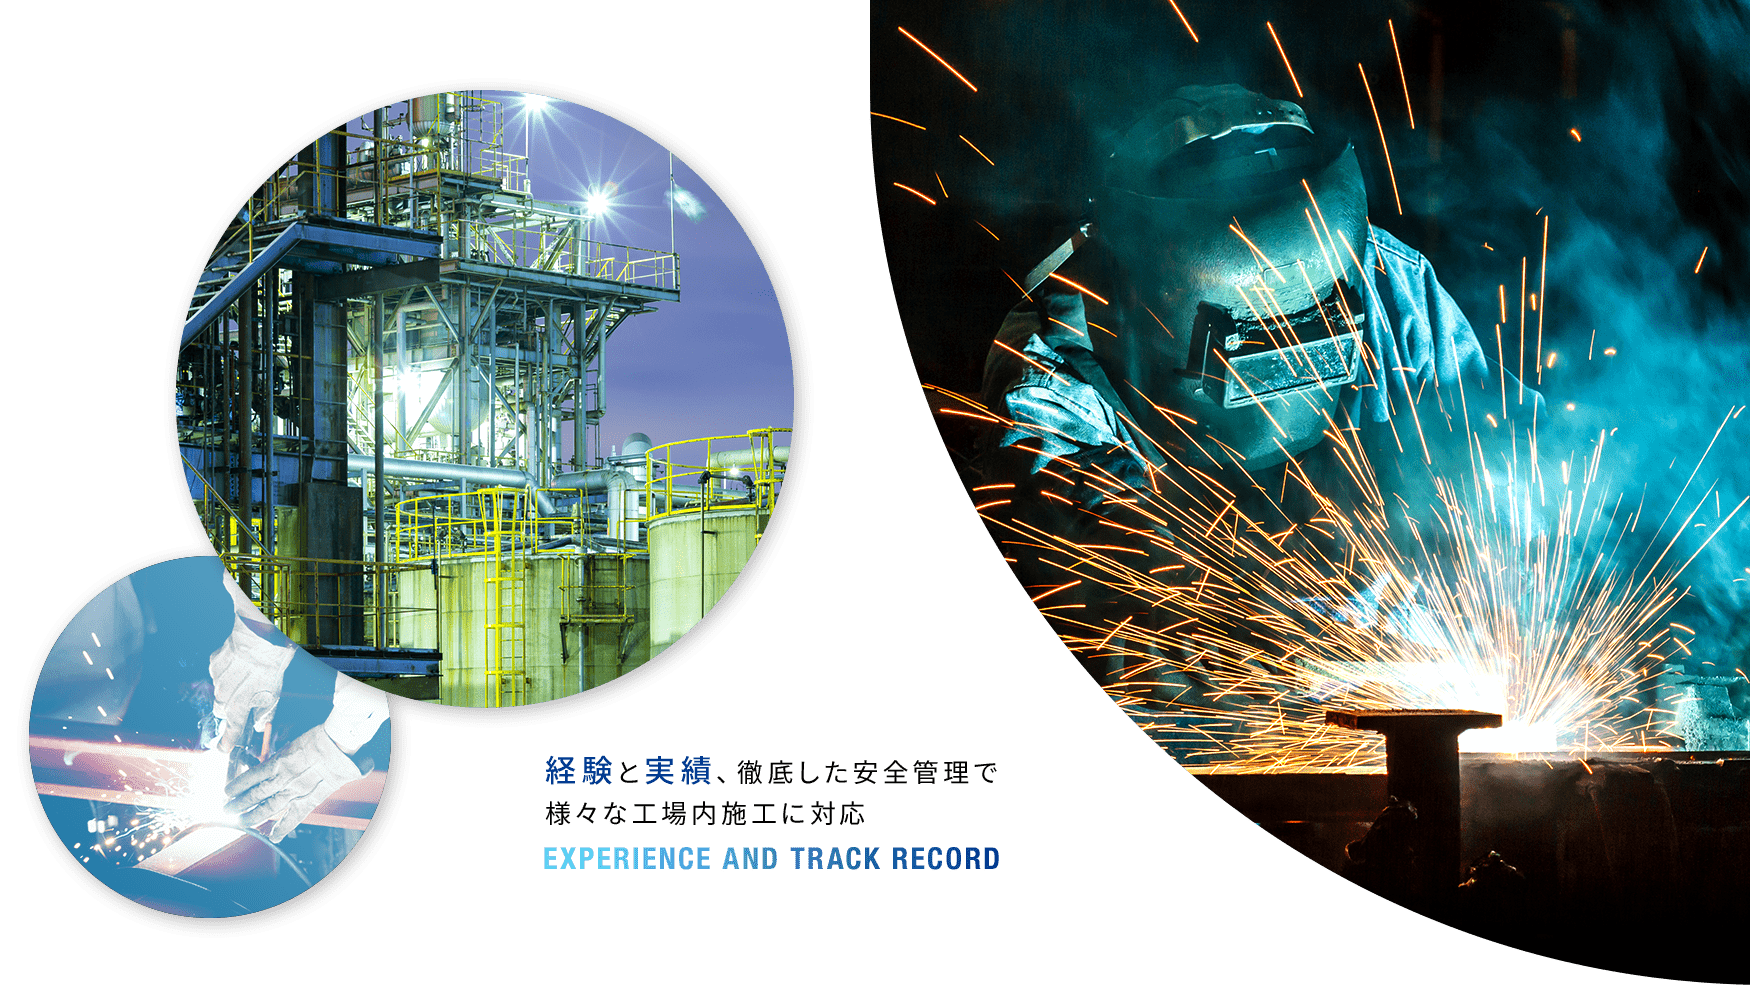 経験と実績、徹底した安全管理で様々な工場内施工に対応